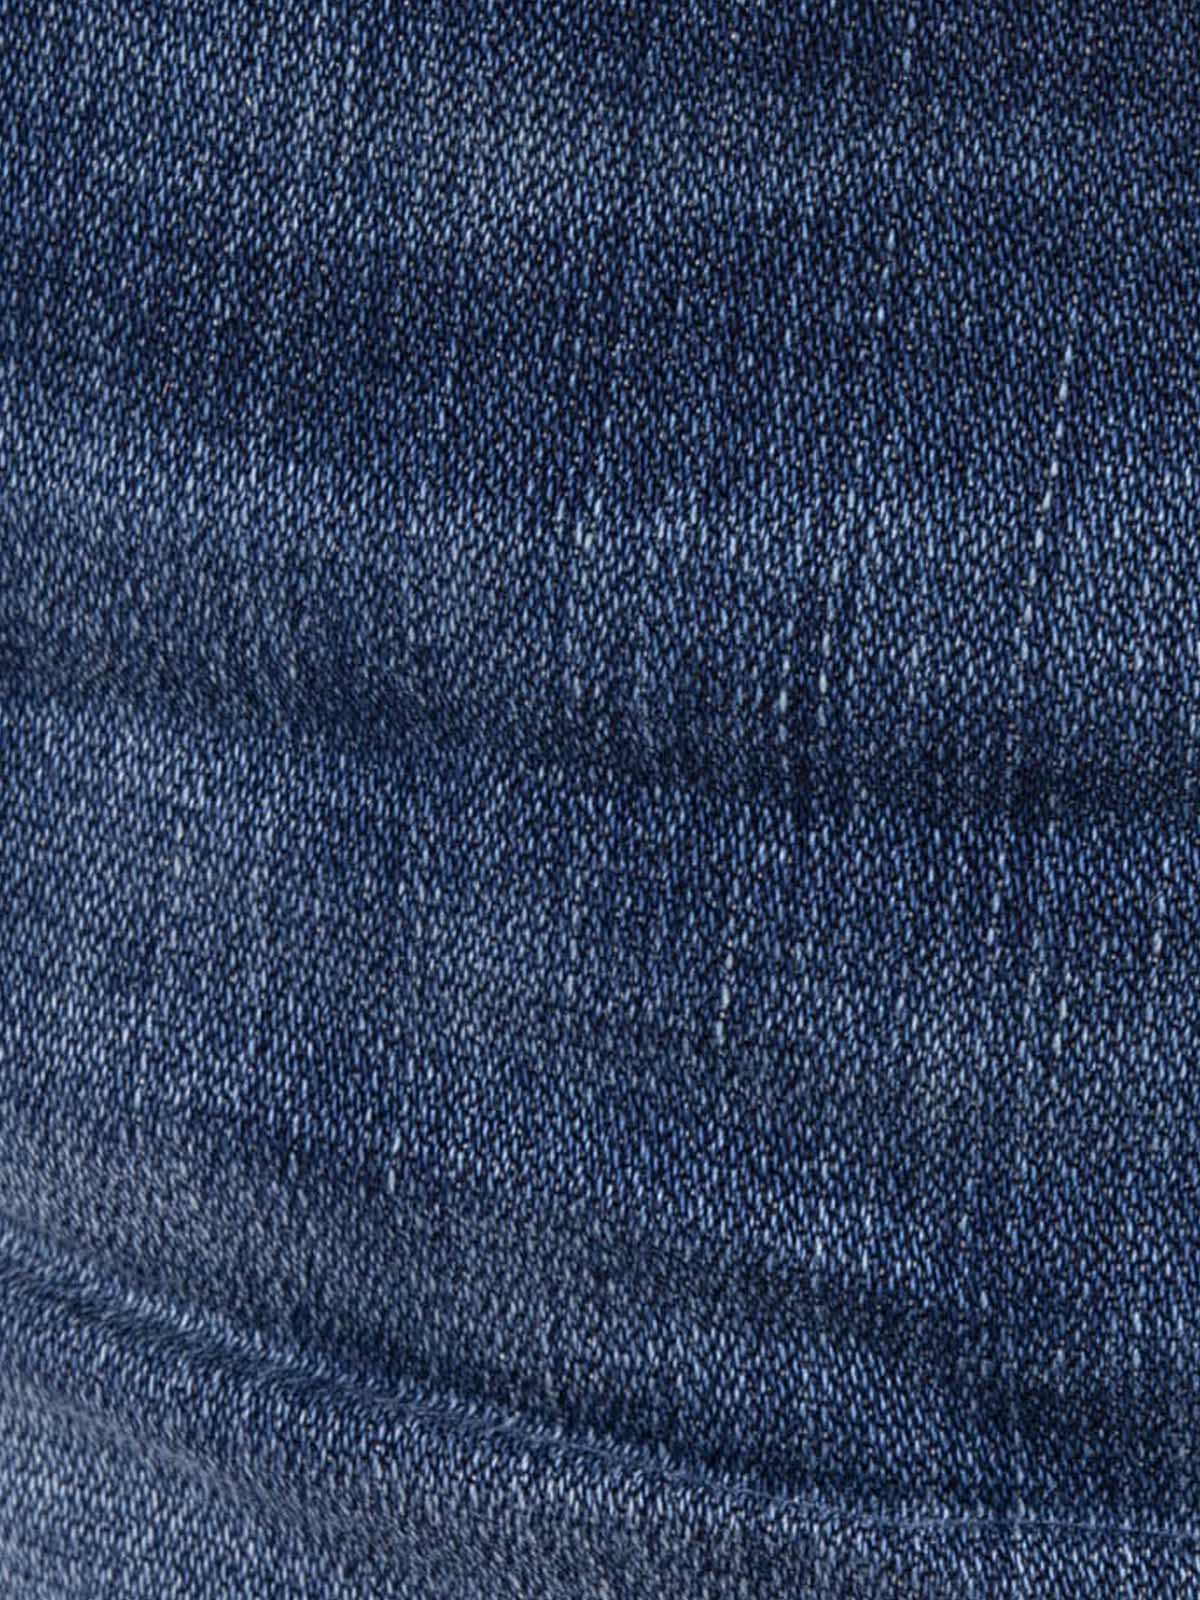 Jeans Moshe 72174 Blue